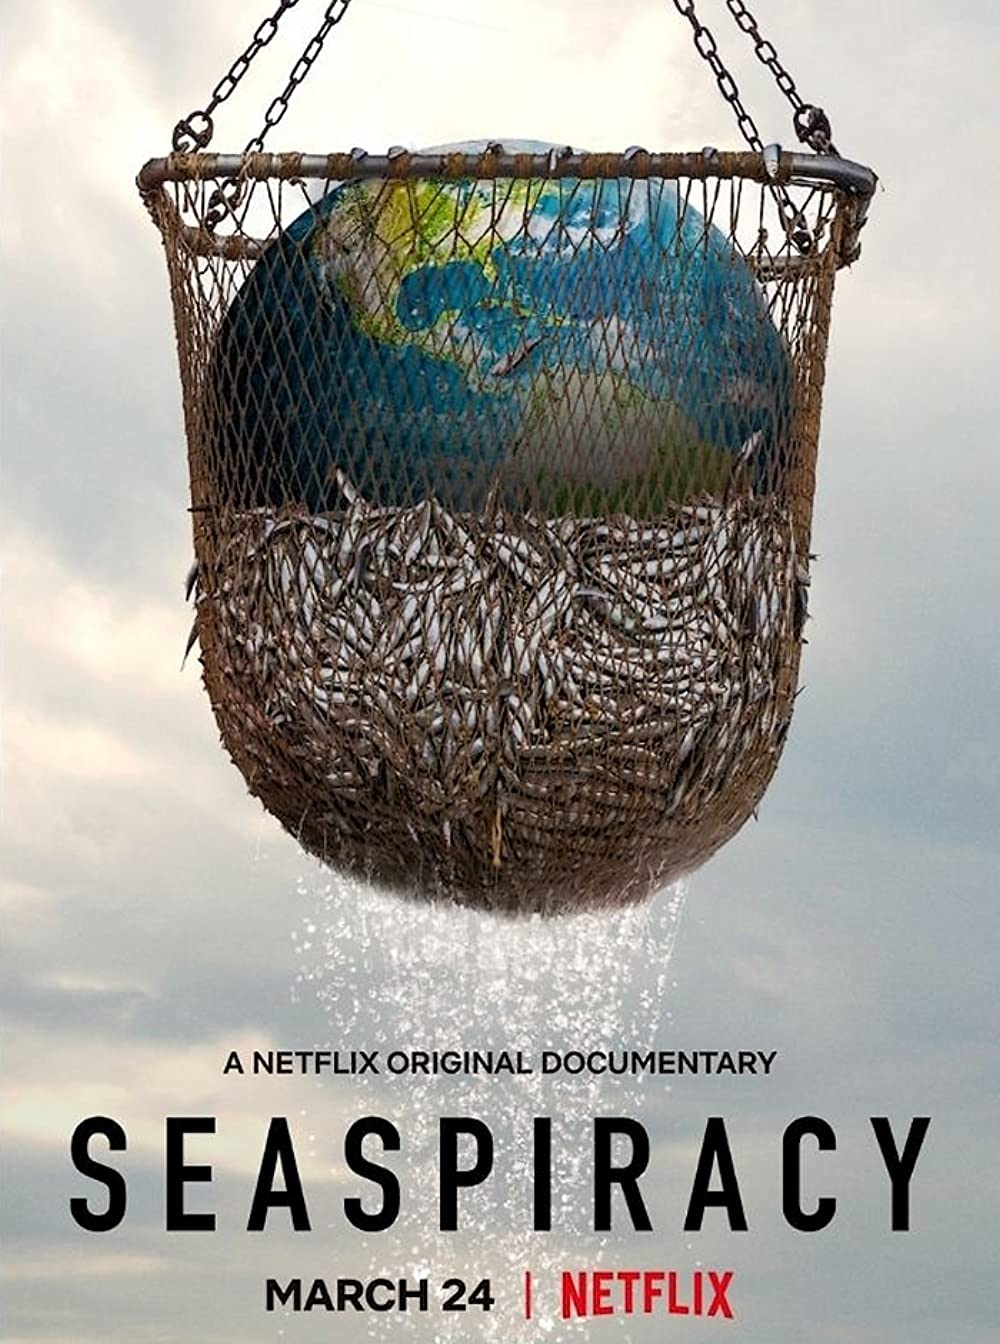 ดูหนังออนไลน์ฟรี ดูหนังใหม่ Netflix SEASPIRACY 2021 ใครทำร้ายทะเล 037hdmovie